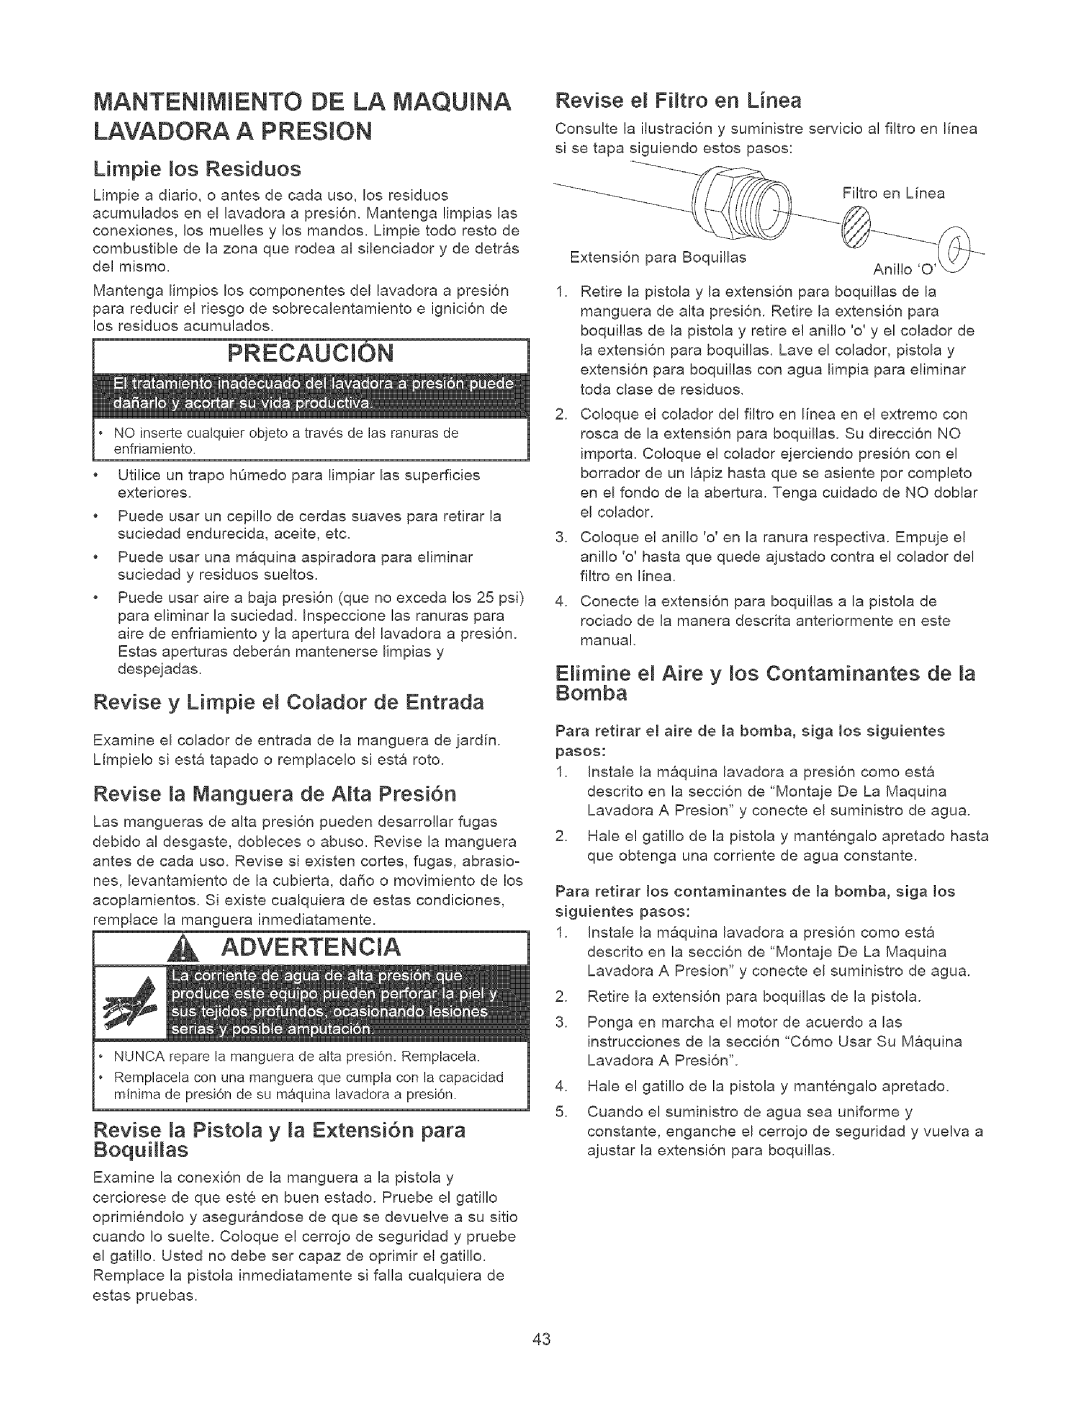 Craftsman 580.7524 Mantenimiento De La Maquina, Lavadora A Presion, Limpie _os Residuos, Revise e_ FHtro en Linea 